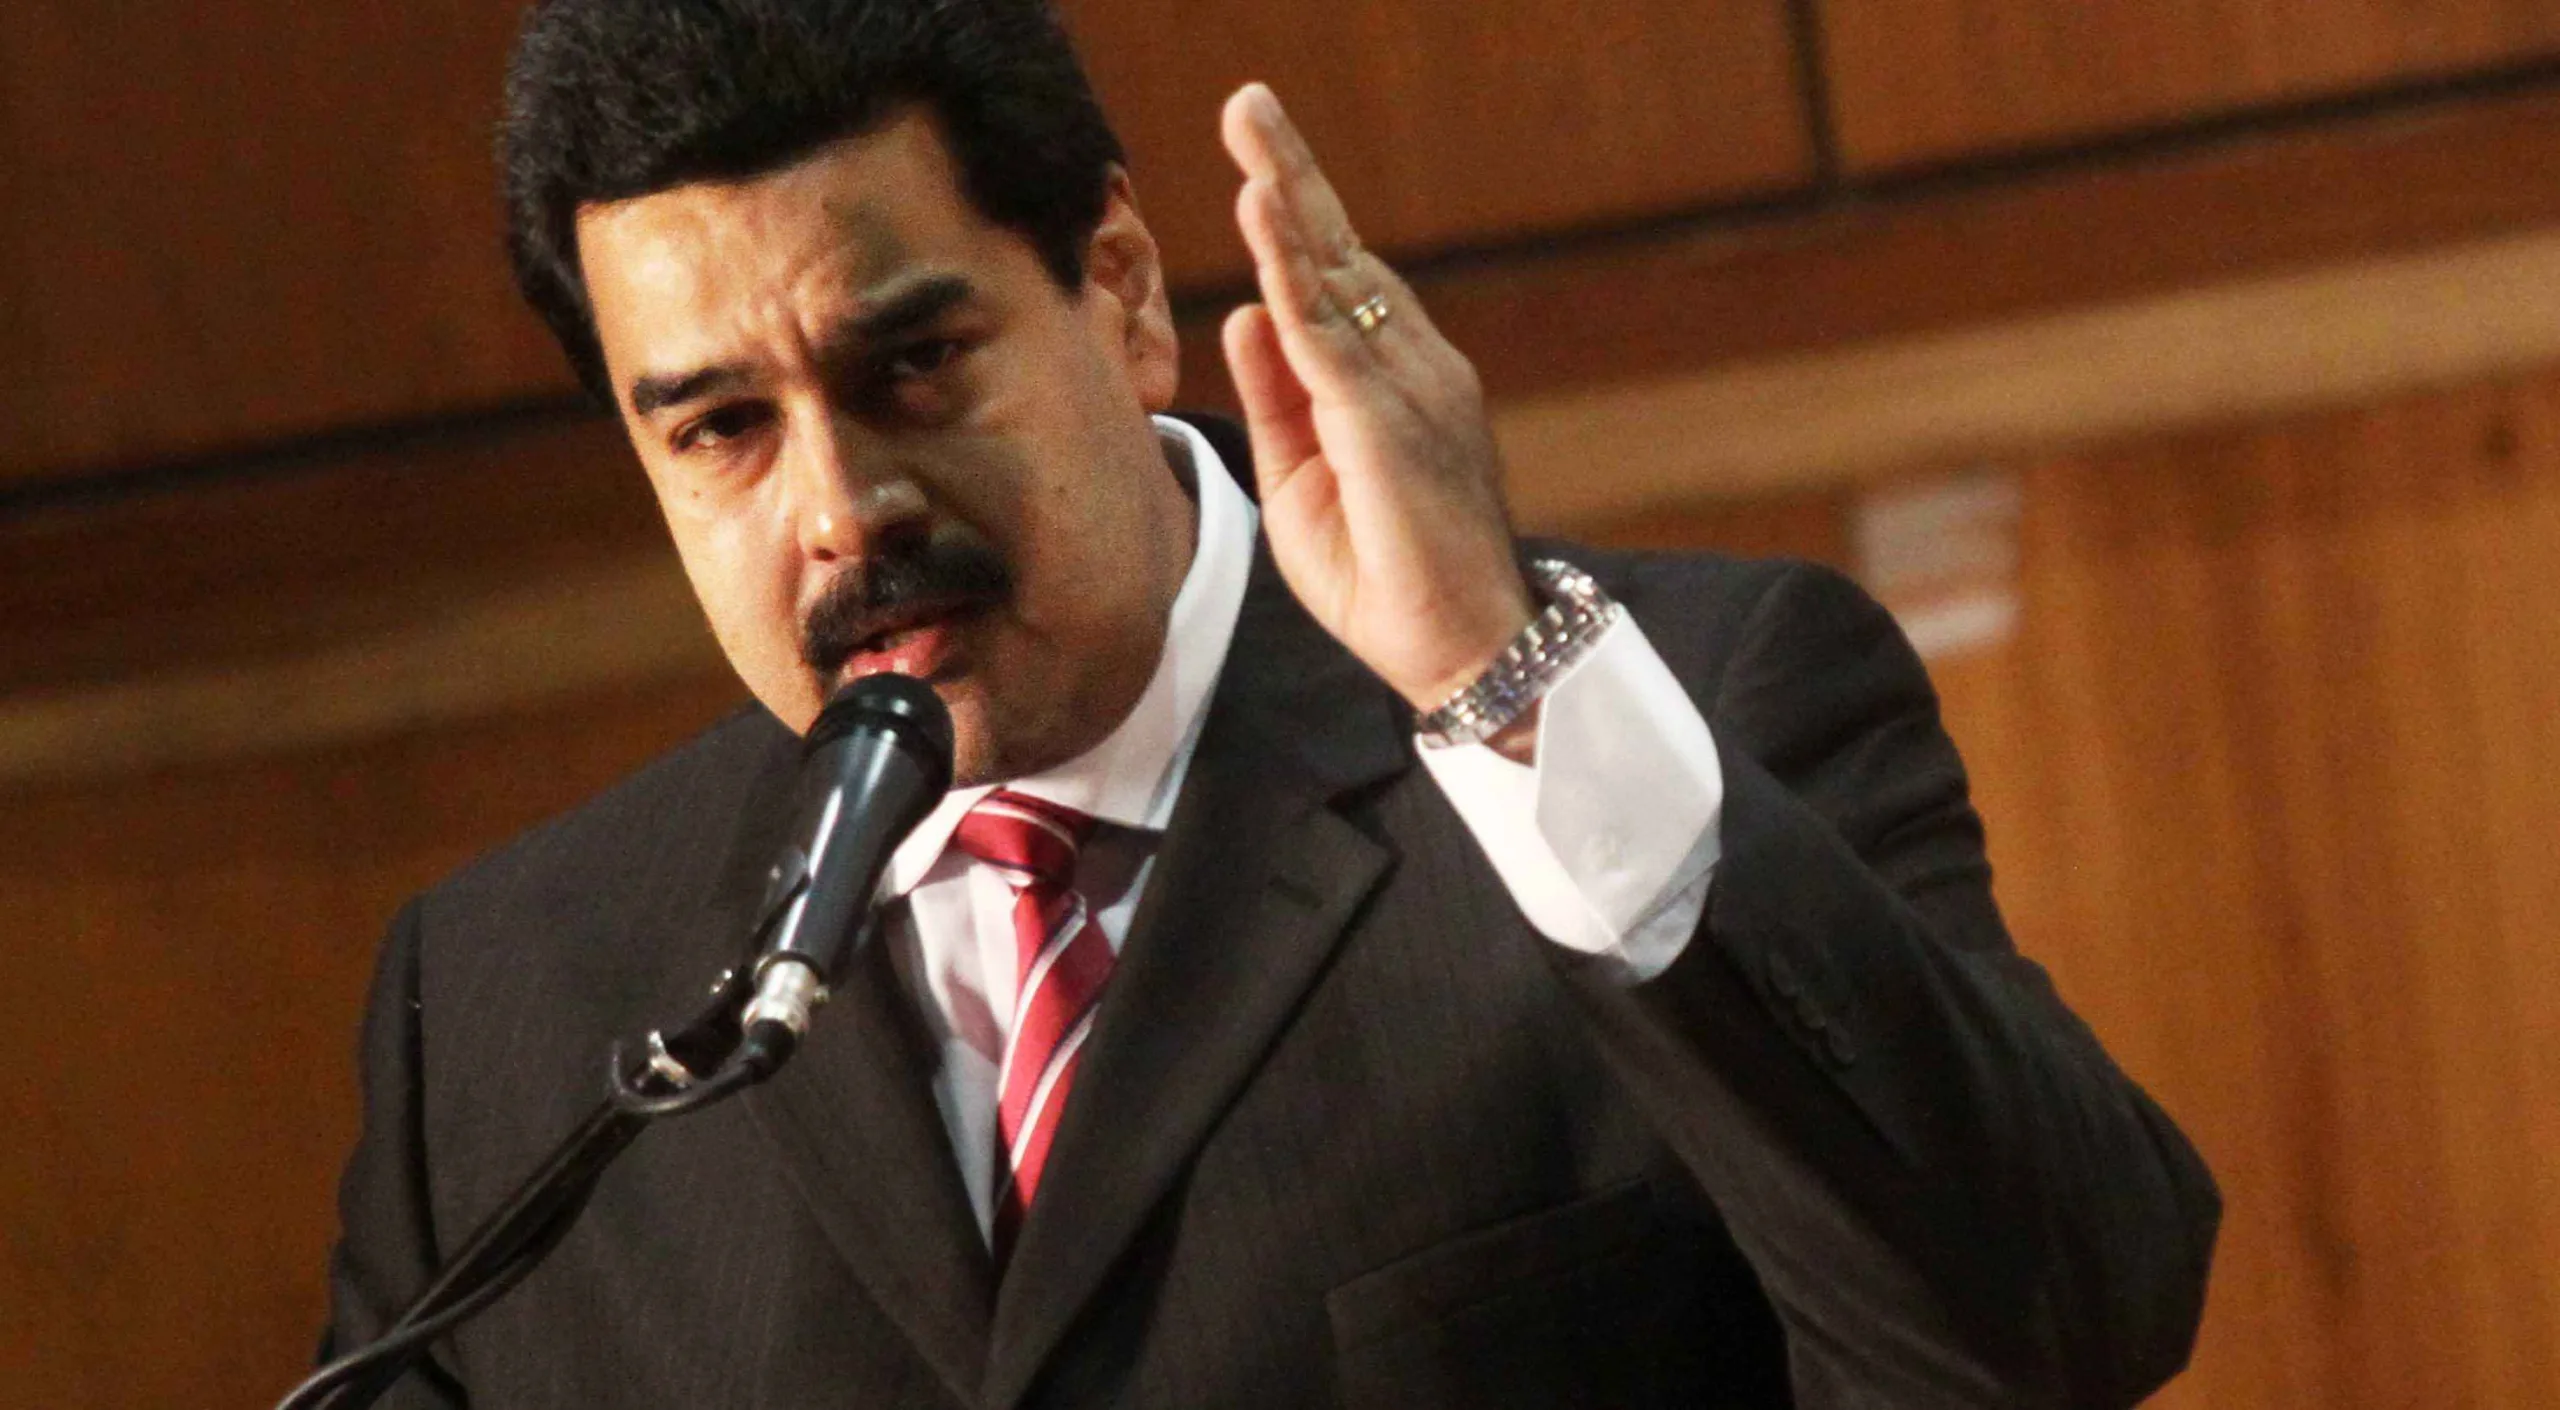 Venezuelan President Maduro